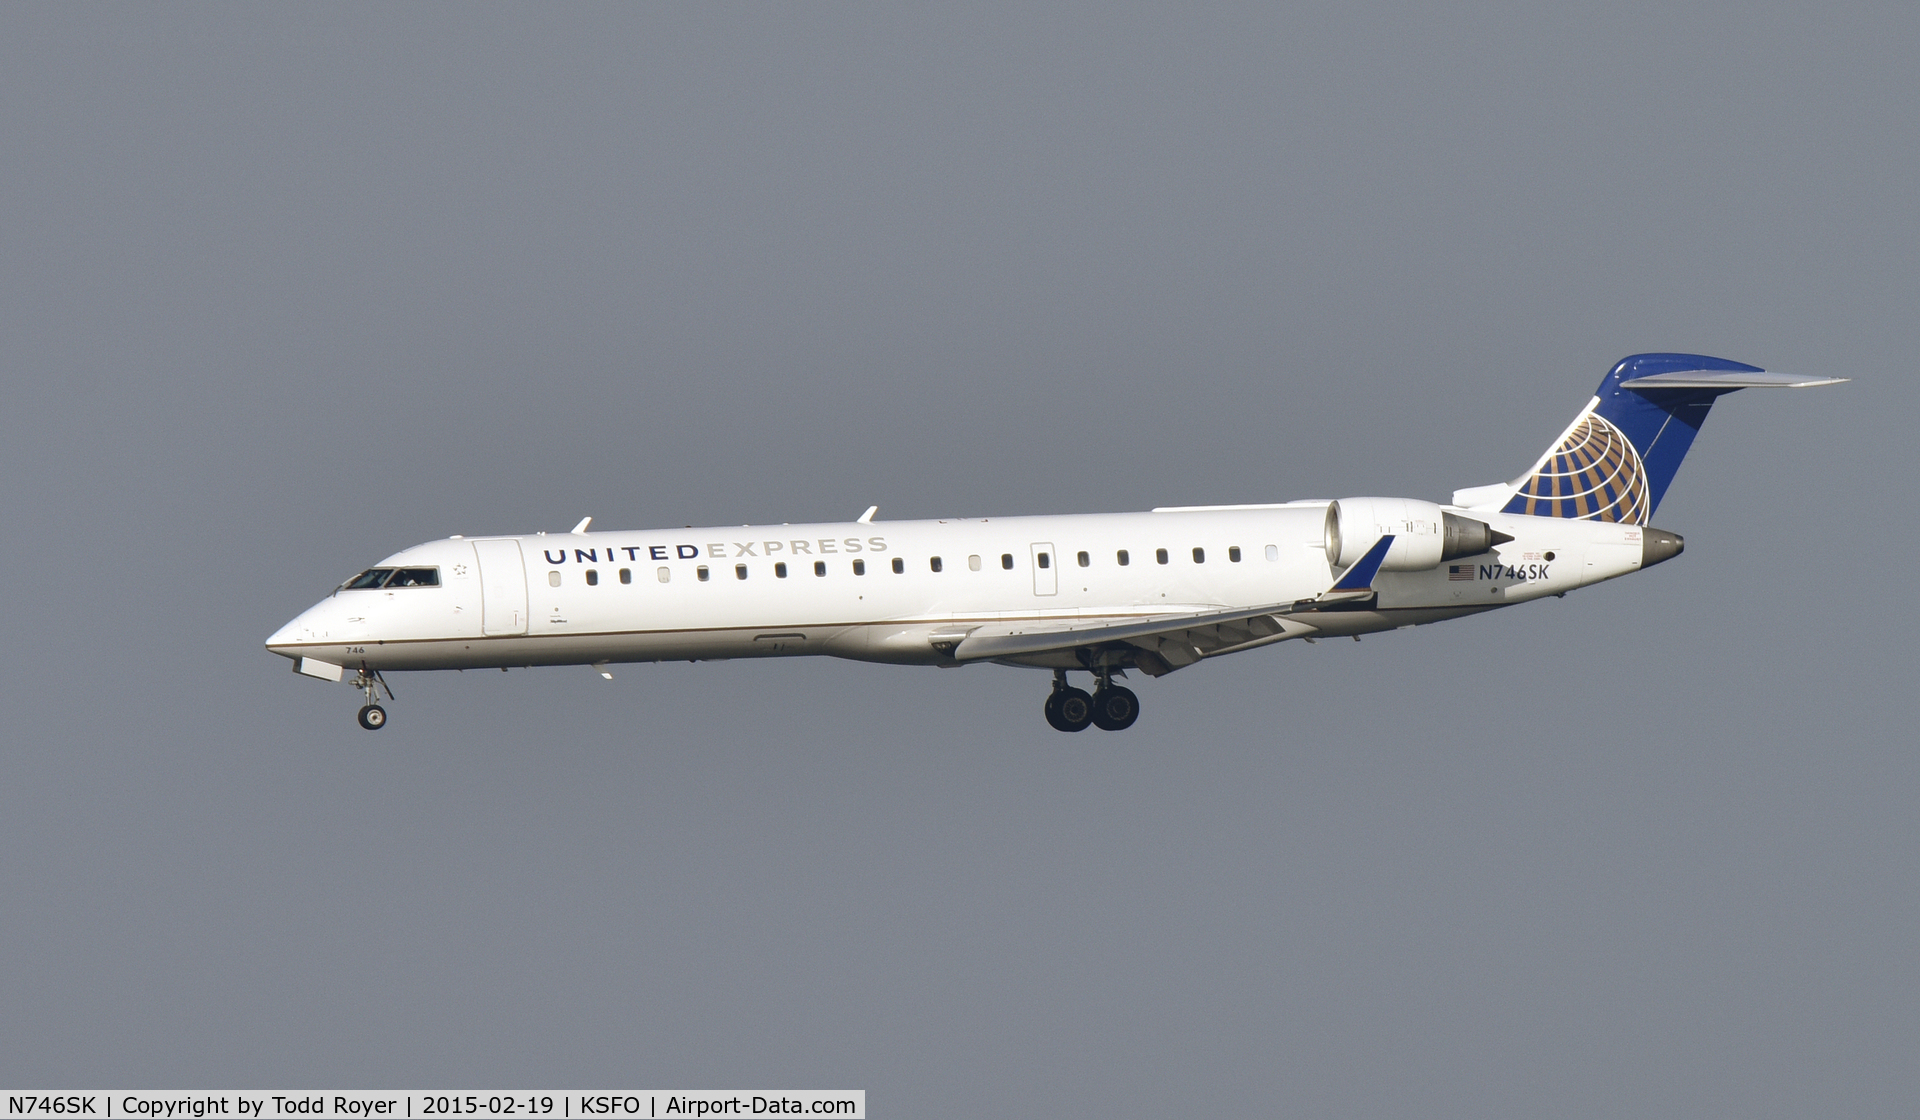 N746SK, 2005 Bombardier CRJ-700 (CL-600-2C10) Regional Jet C/N 10202, Landing at SFO